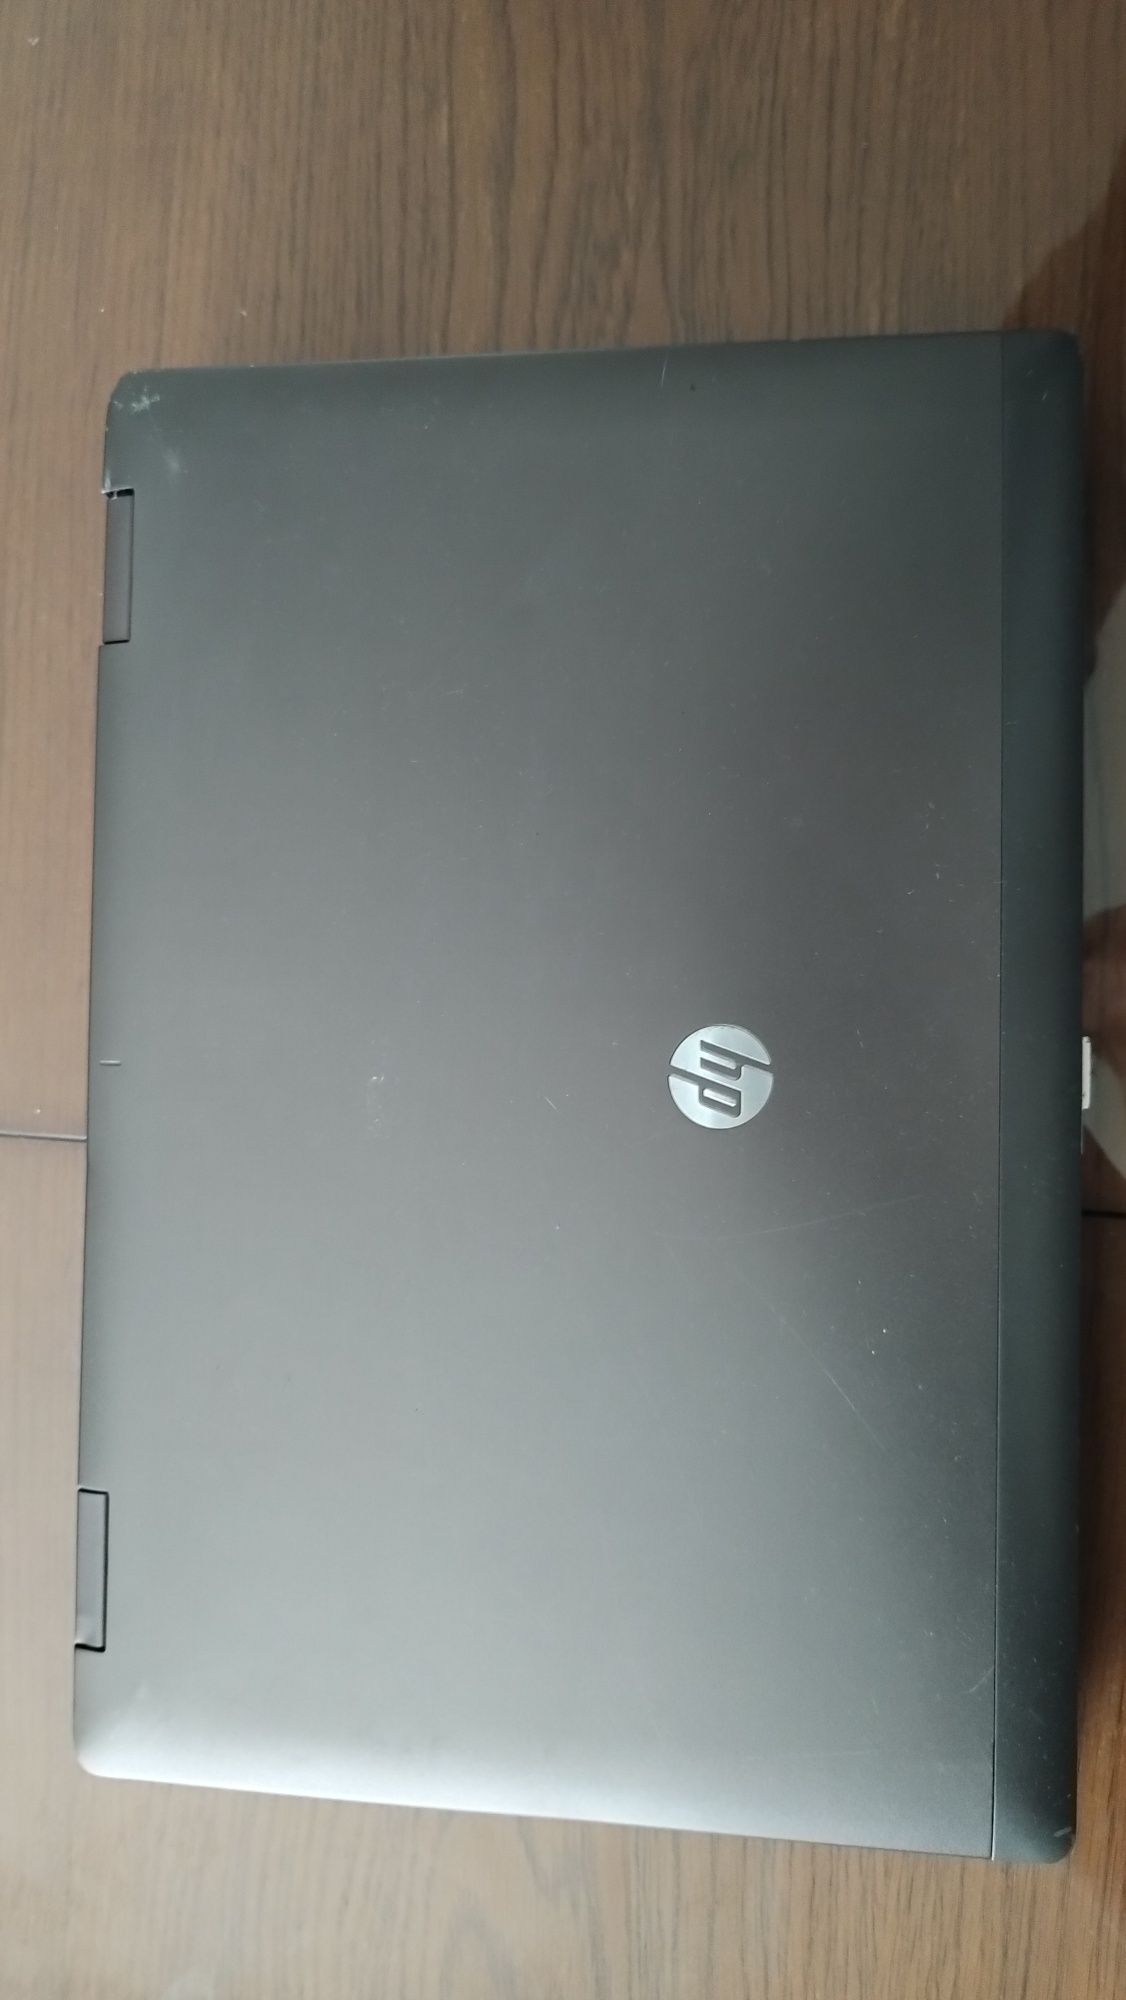 HP ProBook 6475b